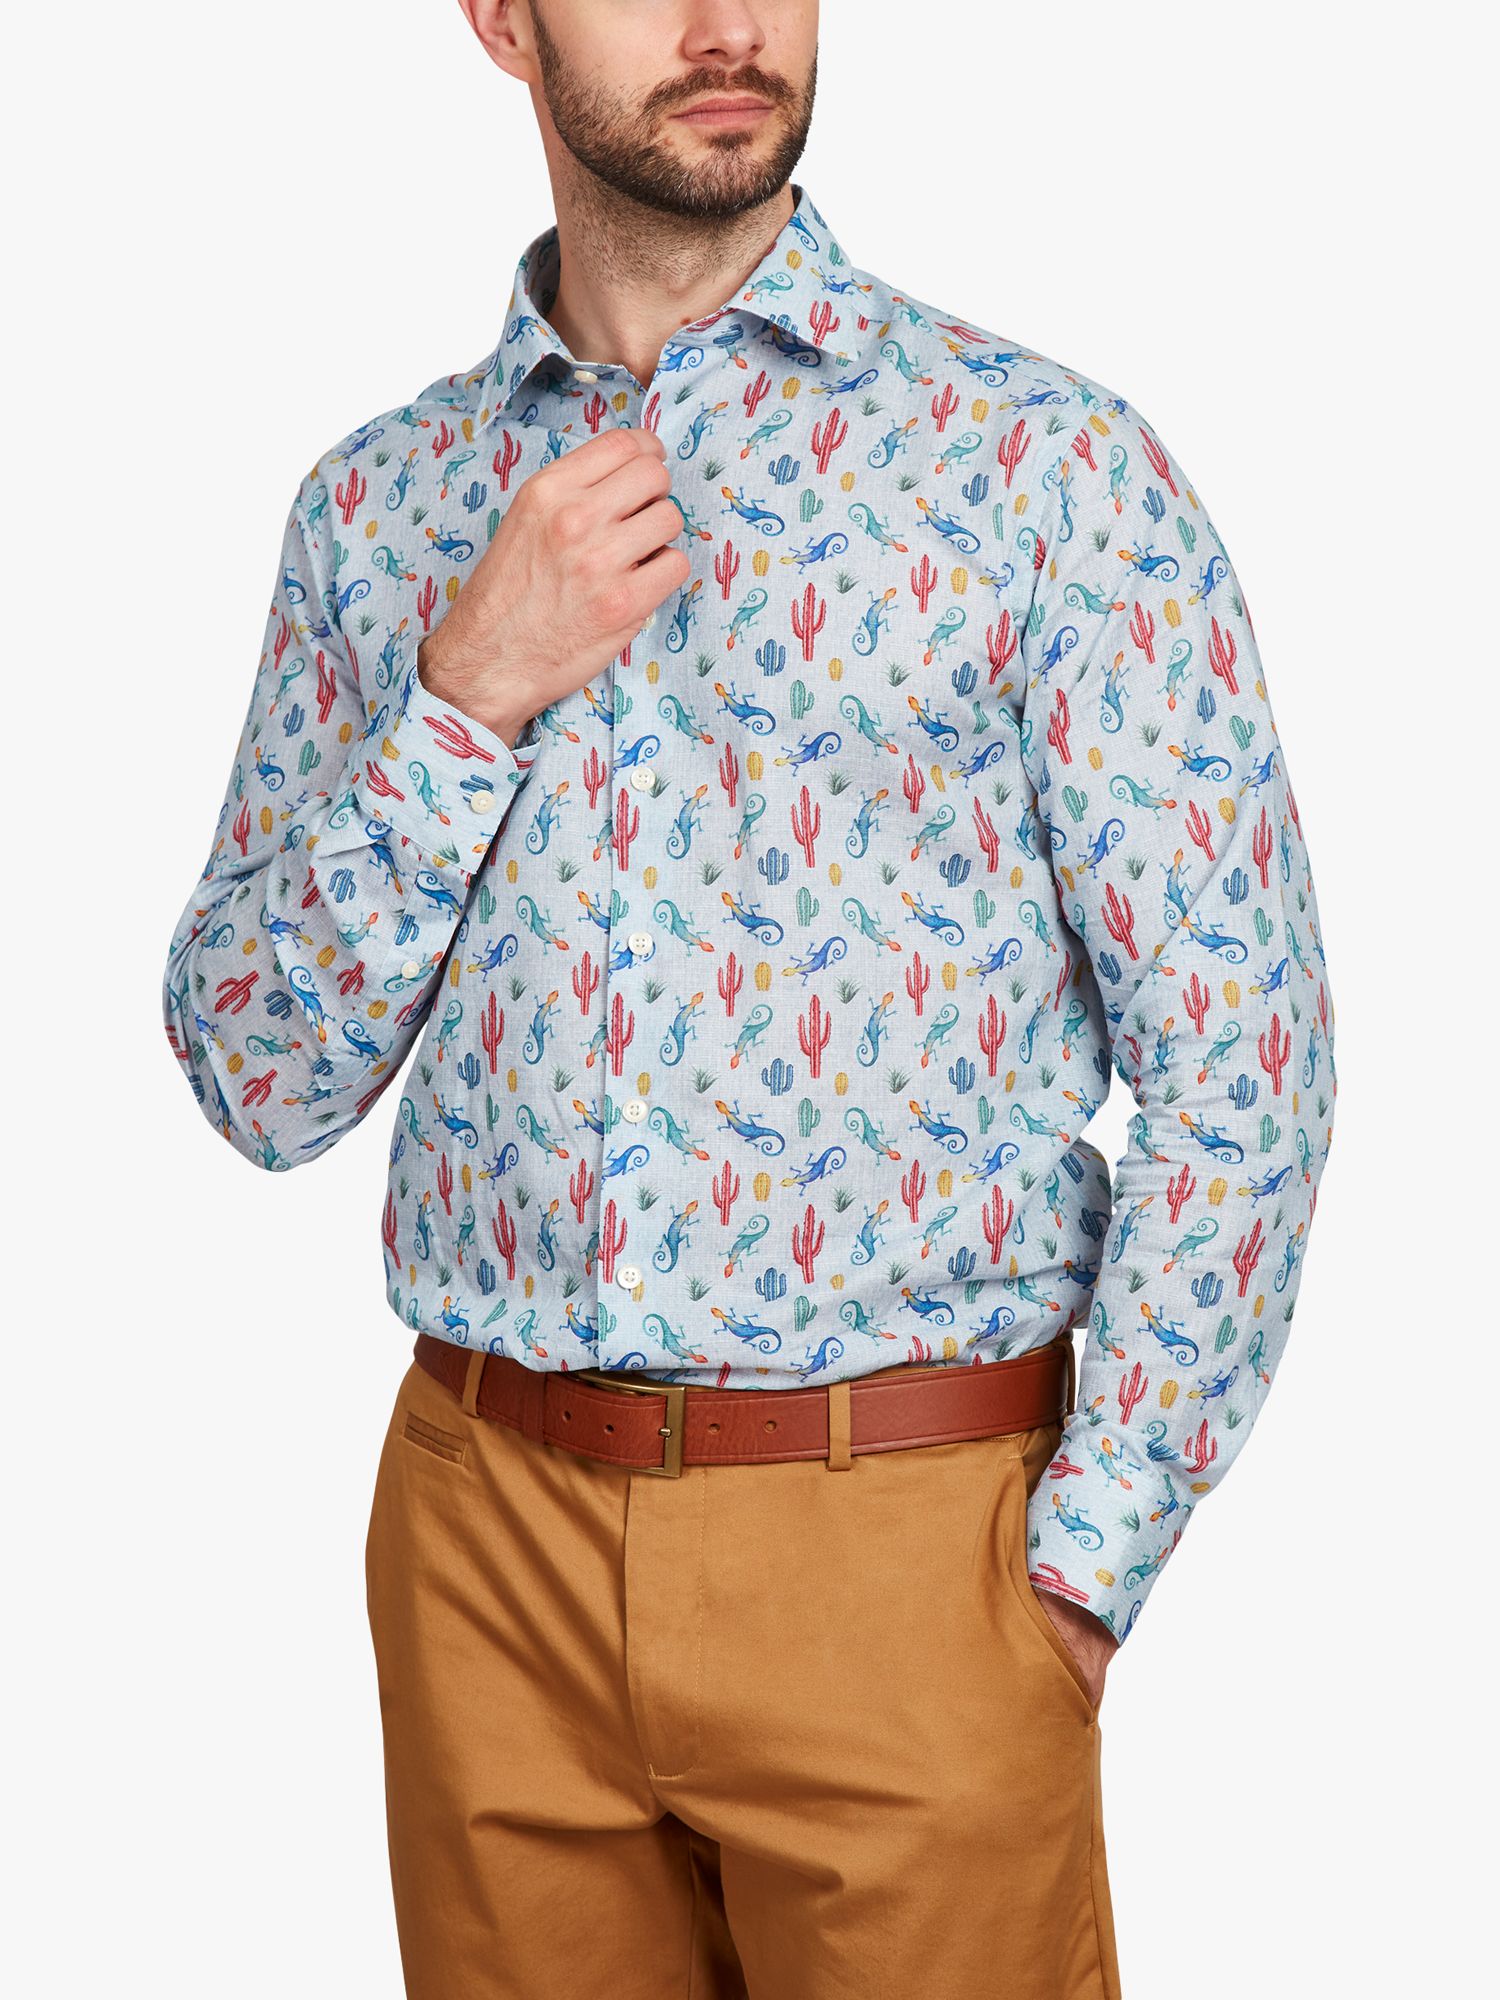 Simon Carter Linen Blend Gecko Print Shirt, Blue/Multi, 15